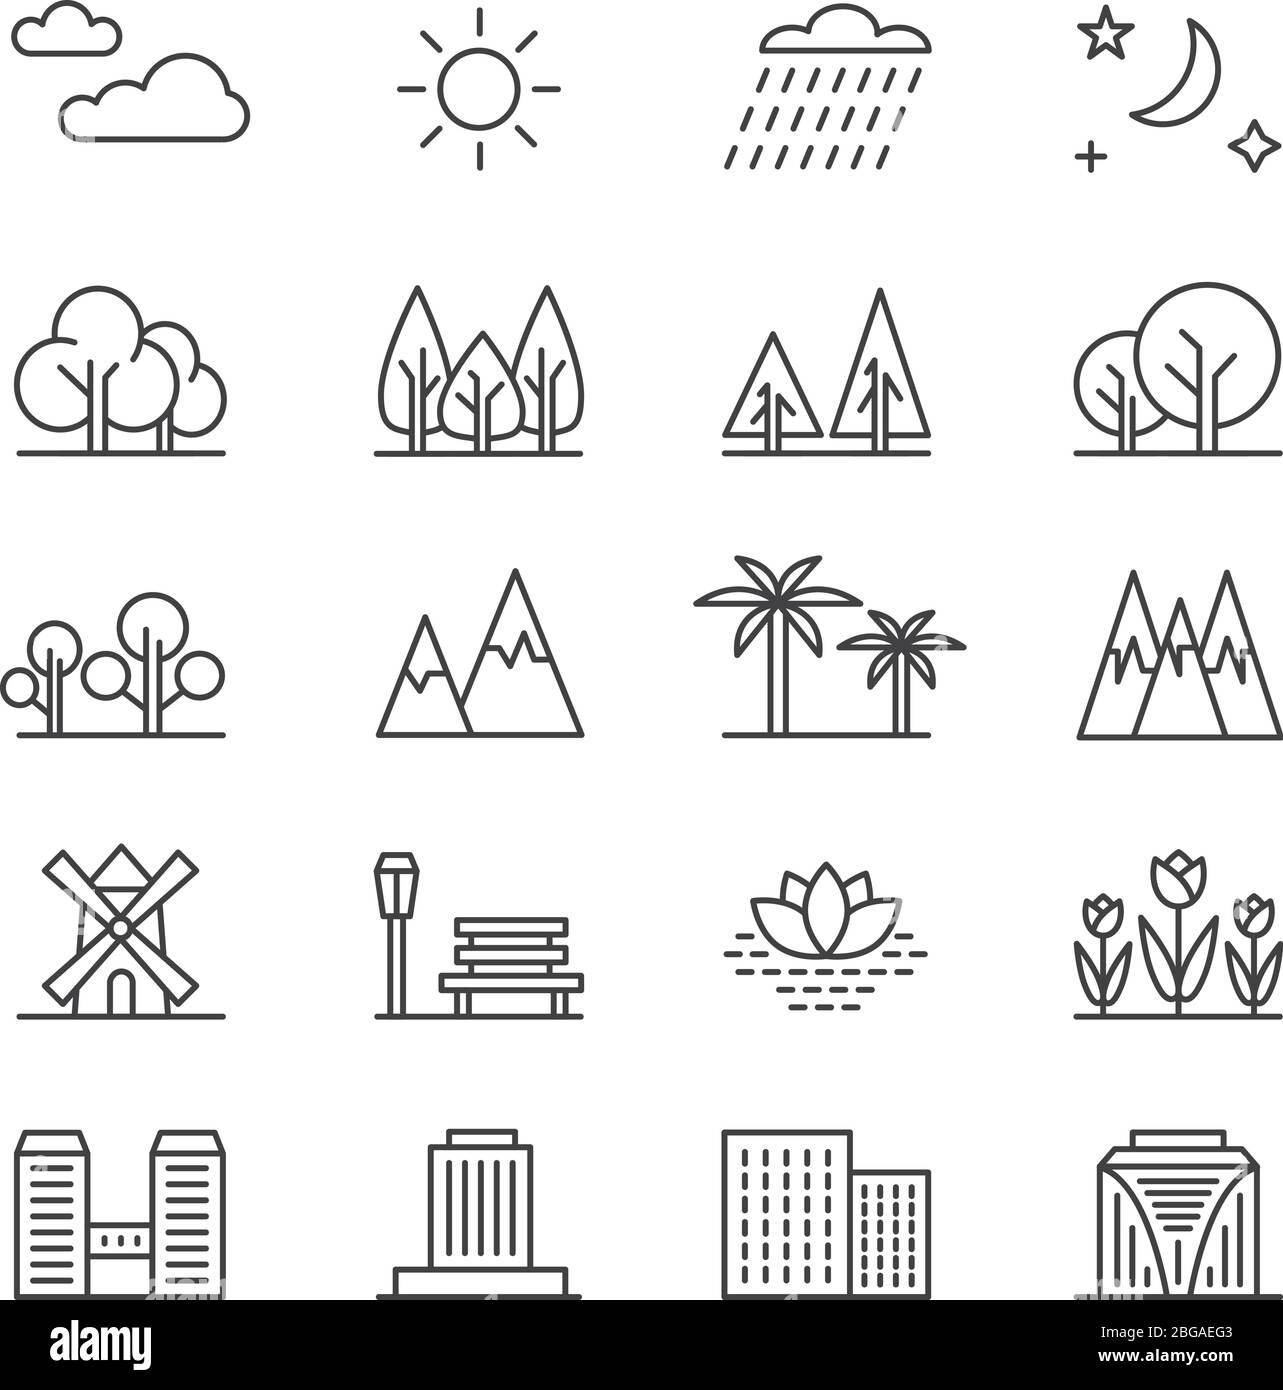 Natur Landschaft Linie Vektor-Elemente und Häuser. Skizzieren Sie die Symbole von Bäumen und Bergen. Stadtgebäude und grüne Baumumrissdarstellung Stock Vektor